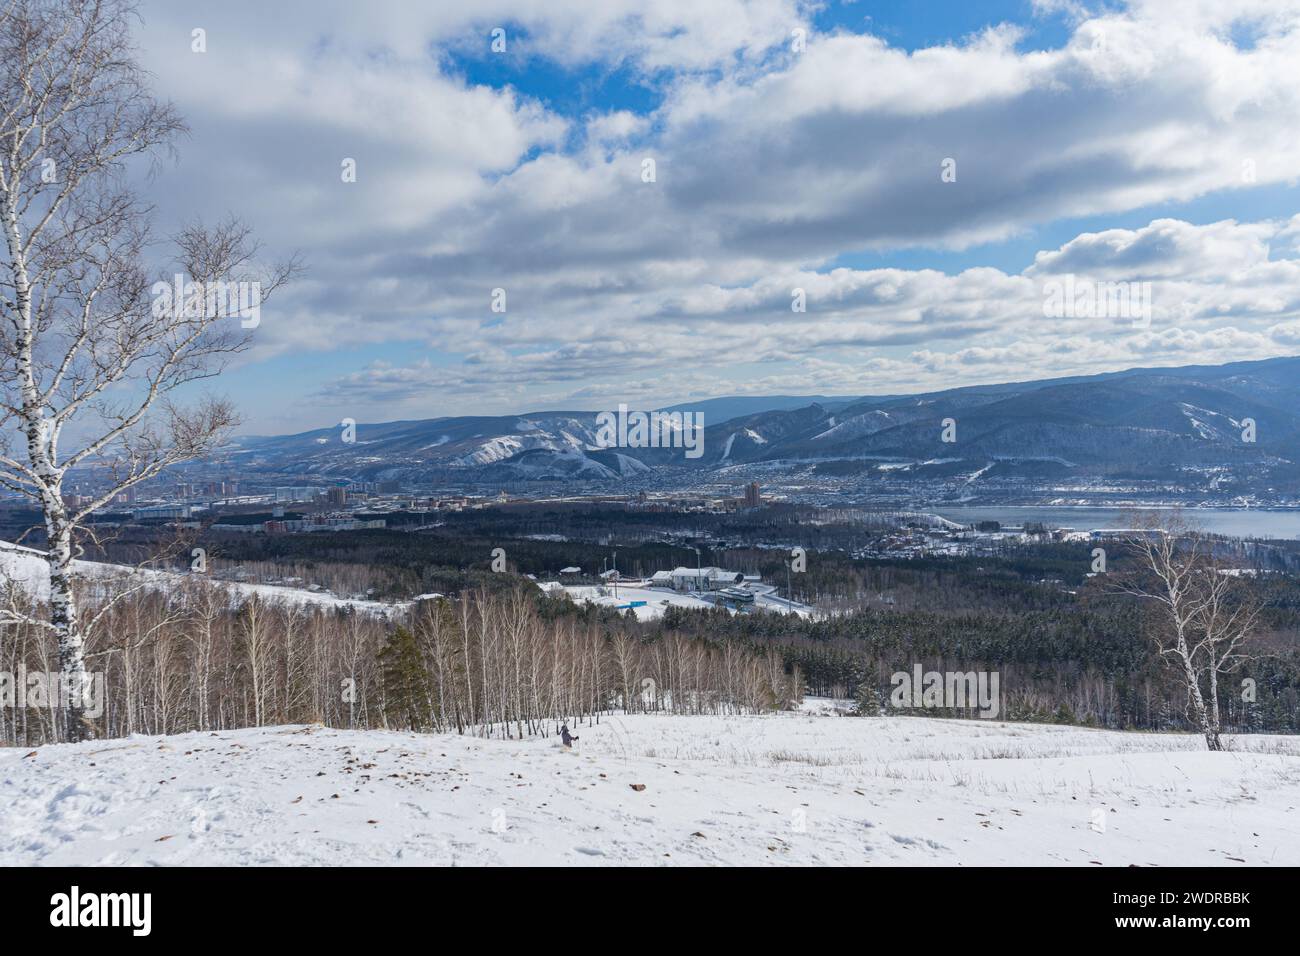 Stadtviertel und Natur. Winterlandschaft. Blauer Himmel mit niedrigen weißen Wolken über der Stadt. Gremyachaya Griva Park, Krasnojarsk, Russland. Stockfoto